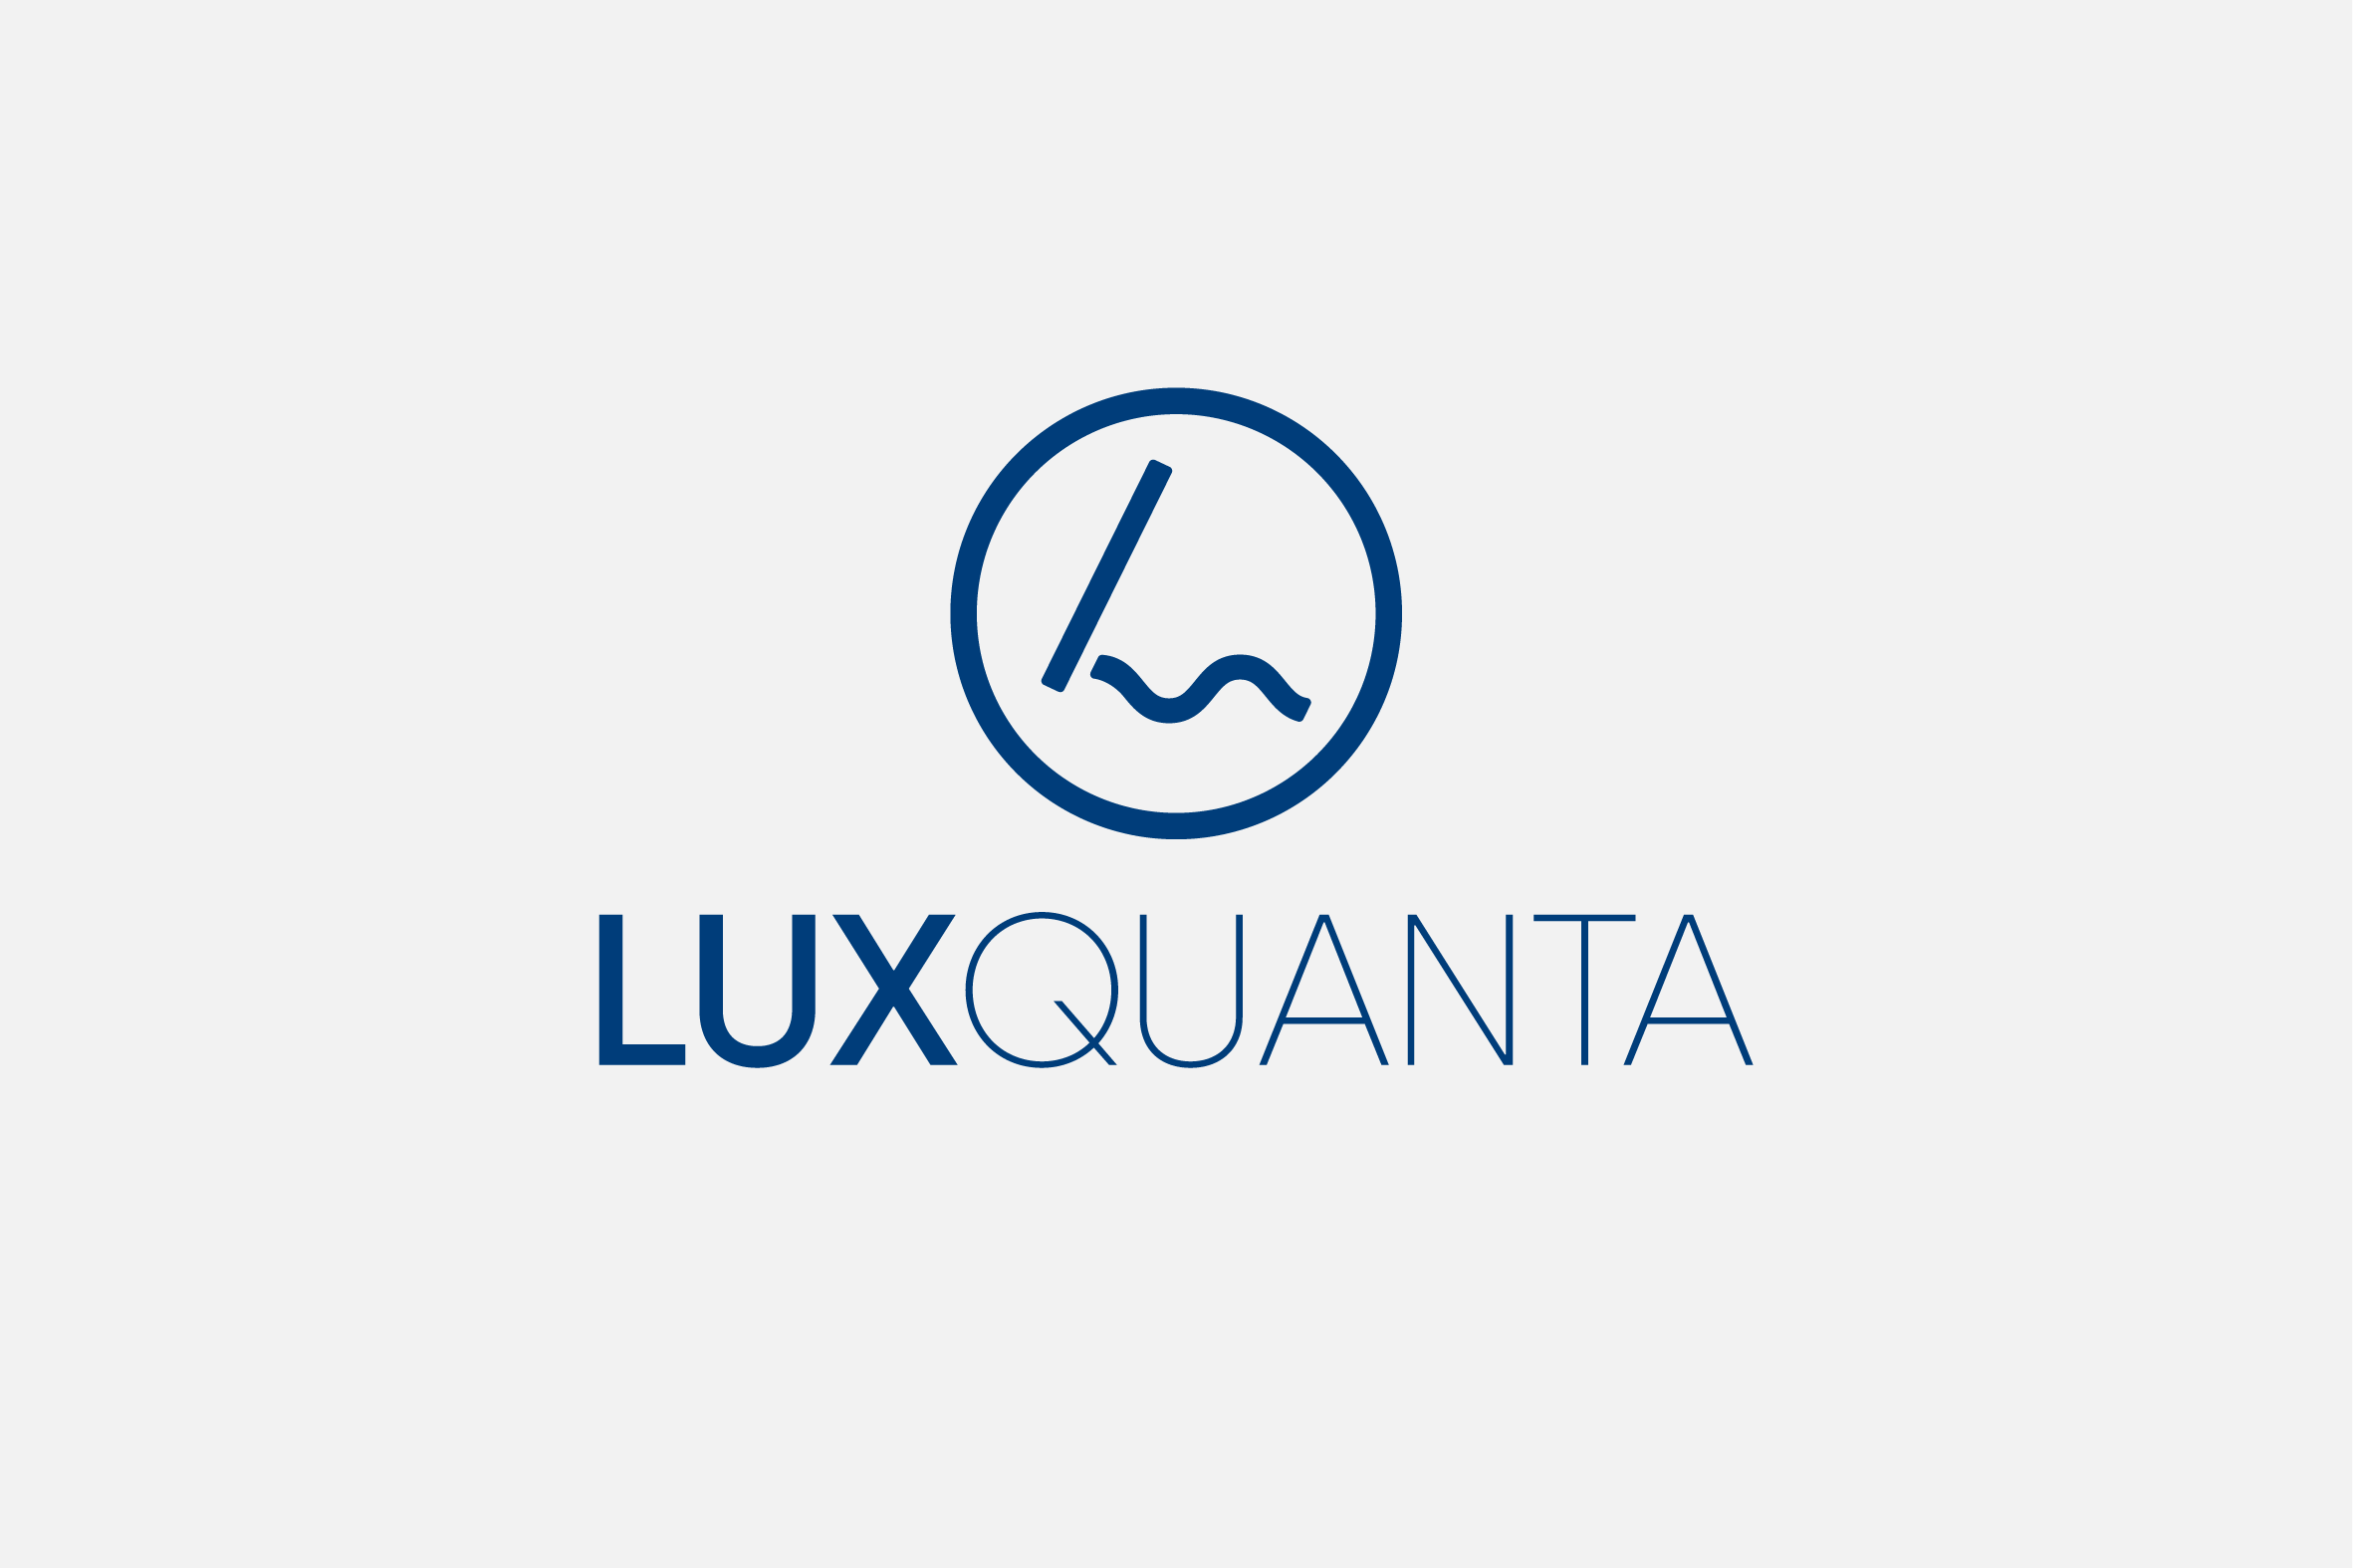 Luxquanta - 과학 및 기술을 위한 그래픽 디자인